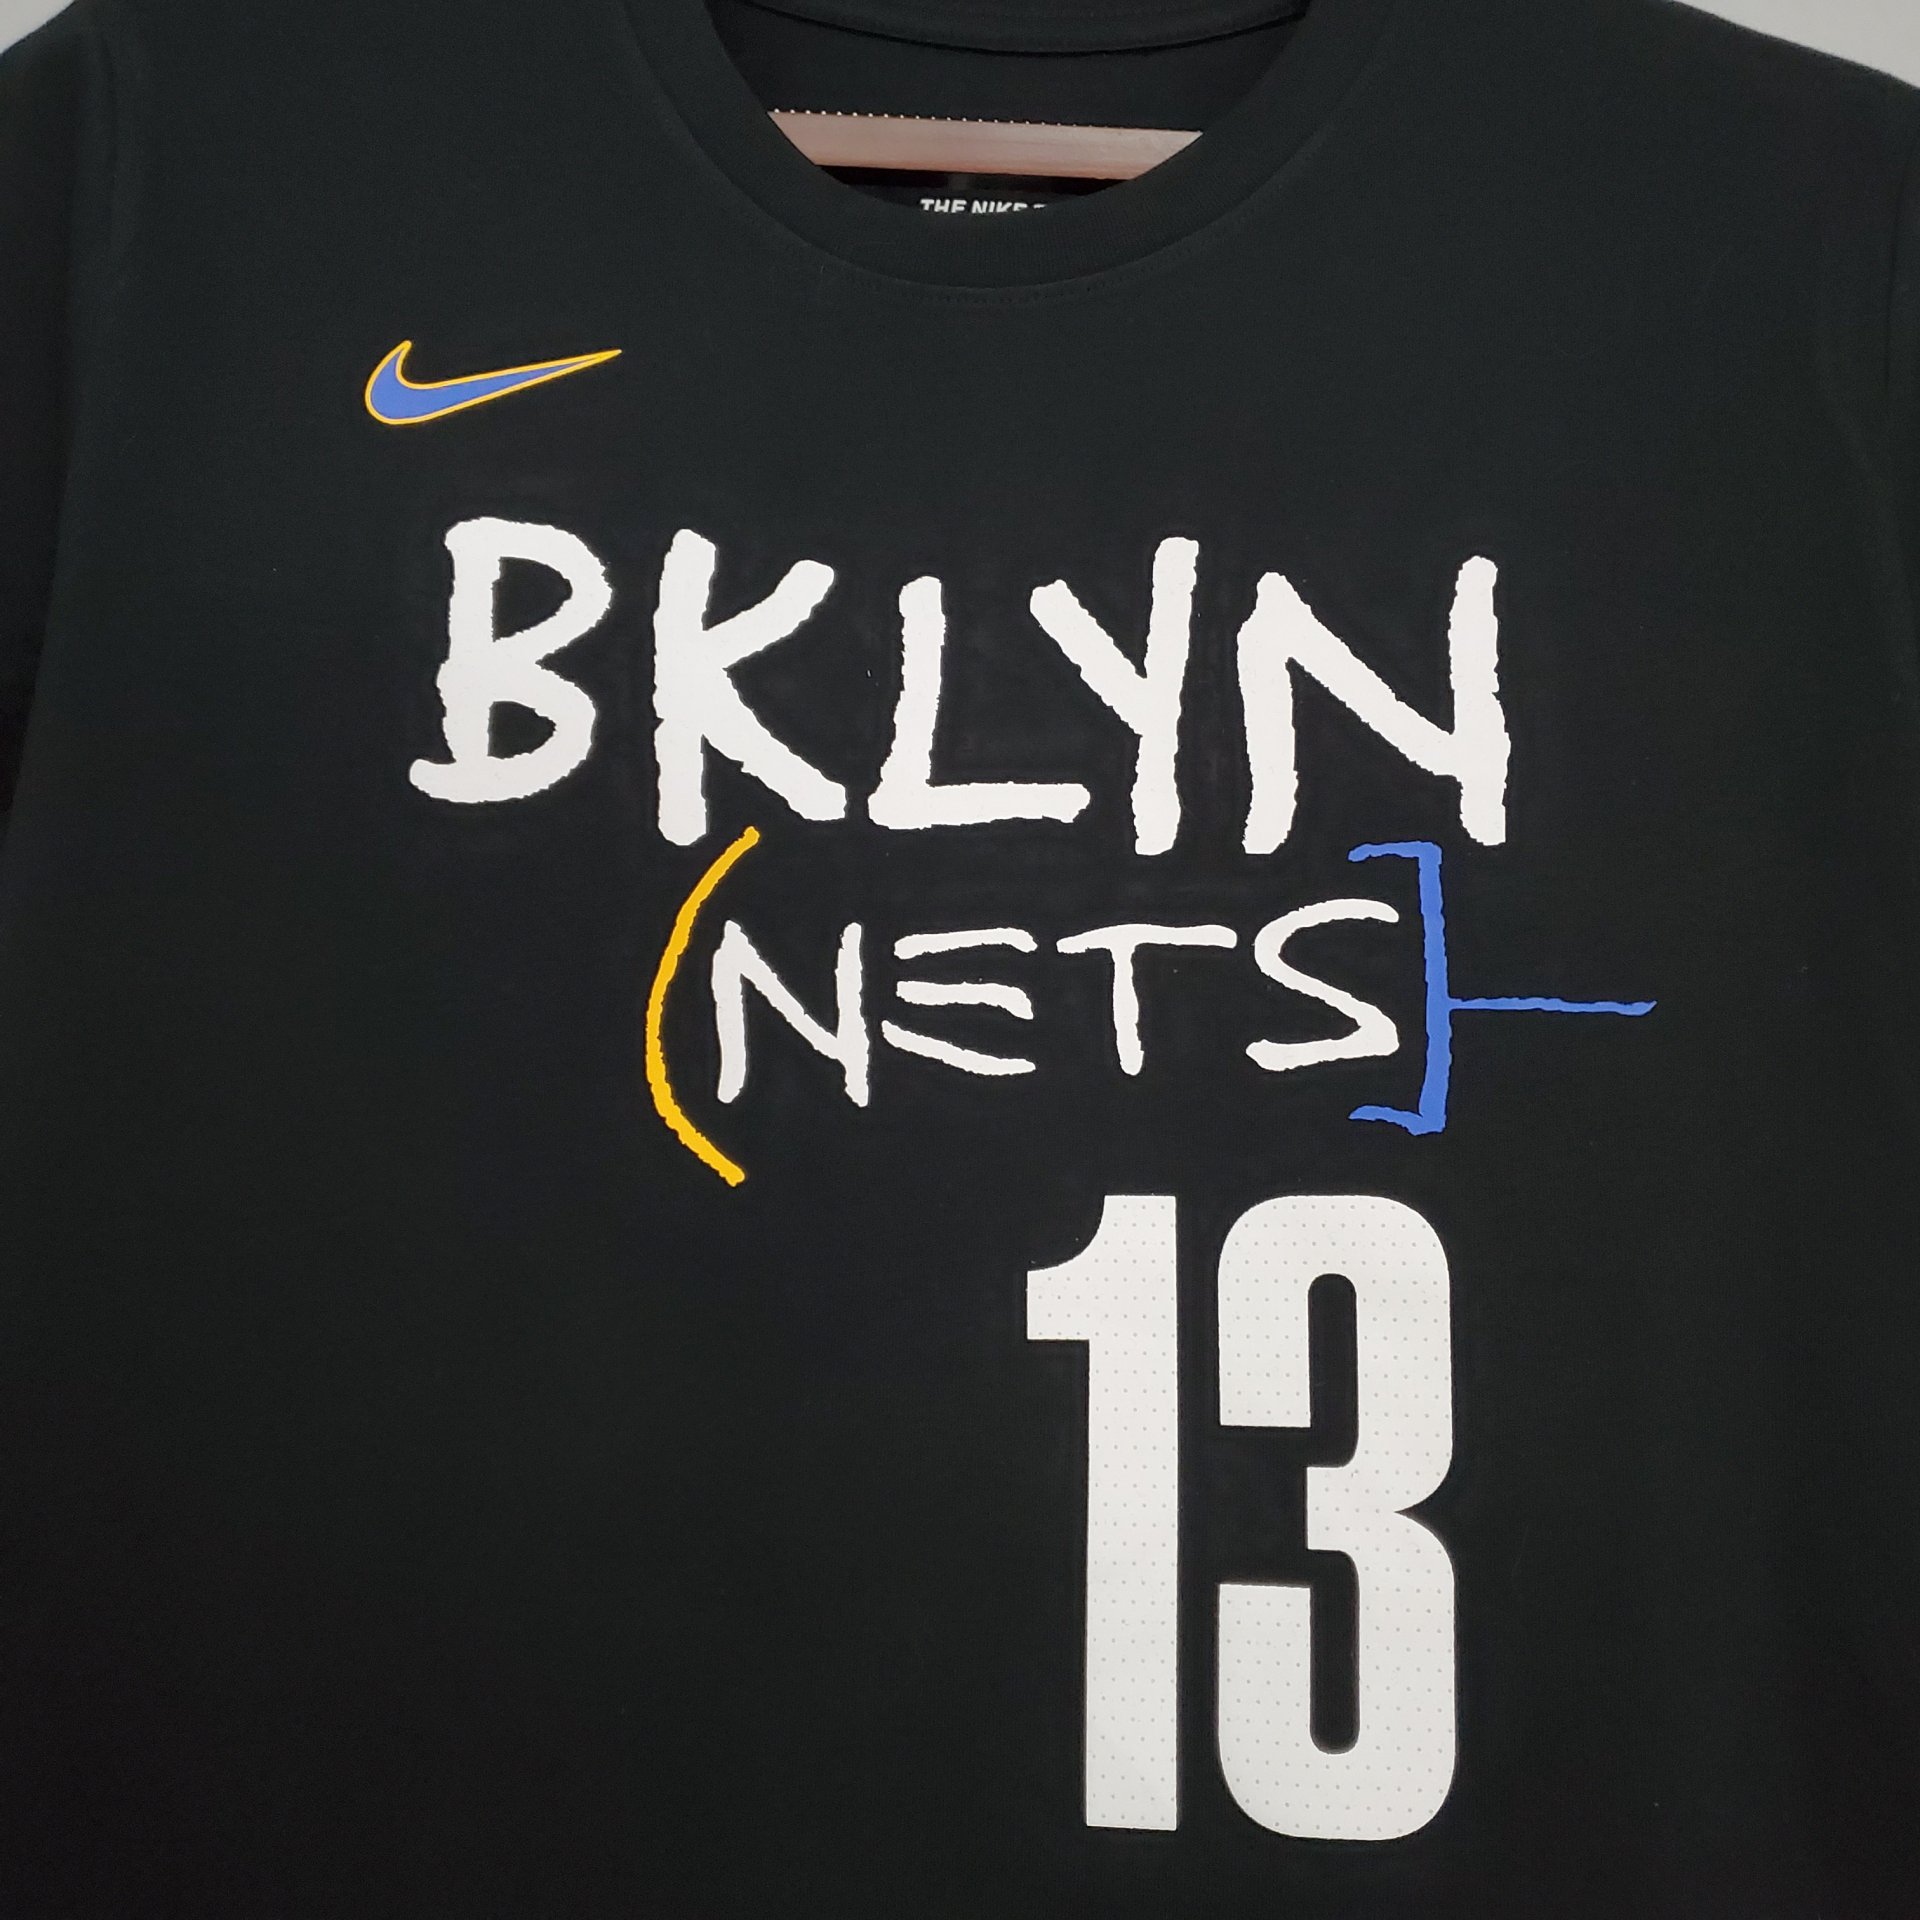 Brooklyn Nets #13 James Harden Retro Blue Jersey